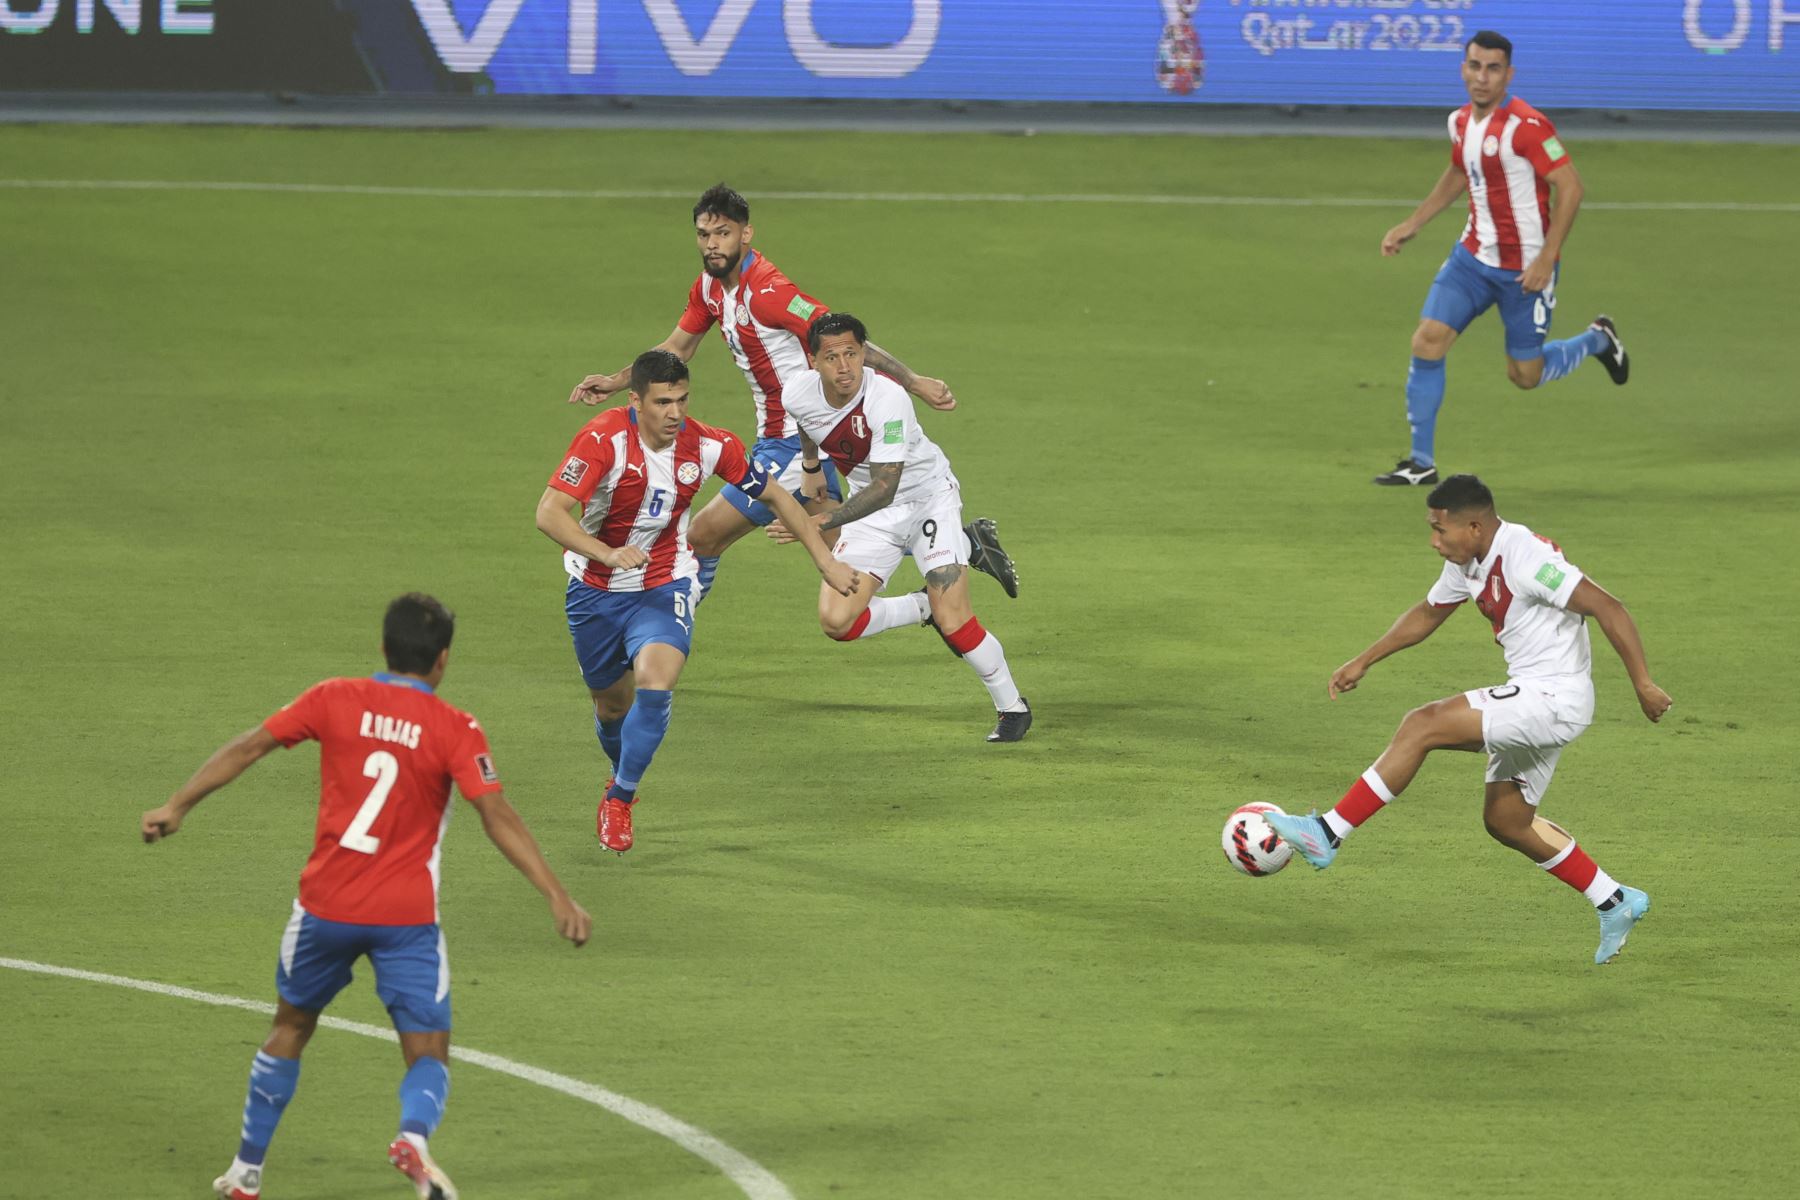 Los goles del partido, que le dieron la tranquilidad y el júbilo a los 50.000 hinchas que abarrotaron el Estadio Nacional de Lima llegaron al comienzo y al final de la primera etapa. Foto: AFP